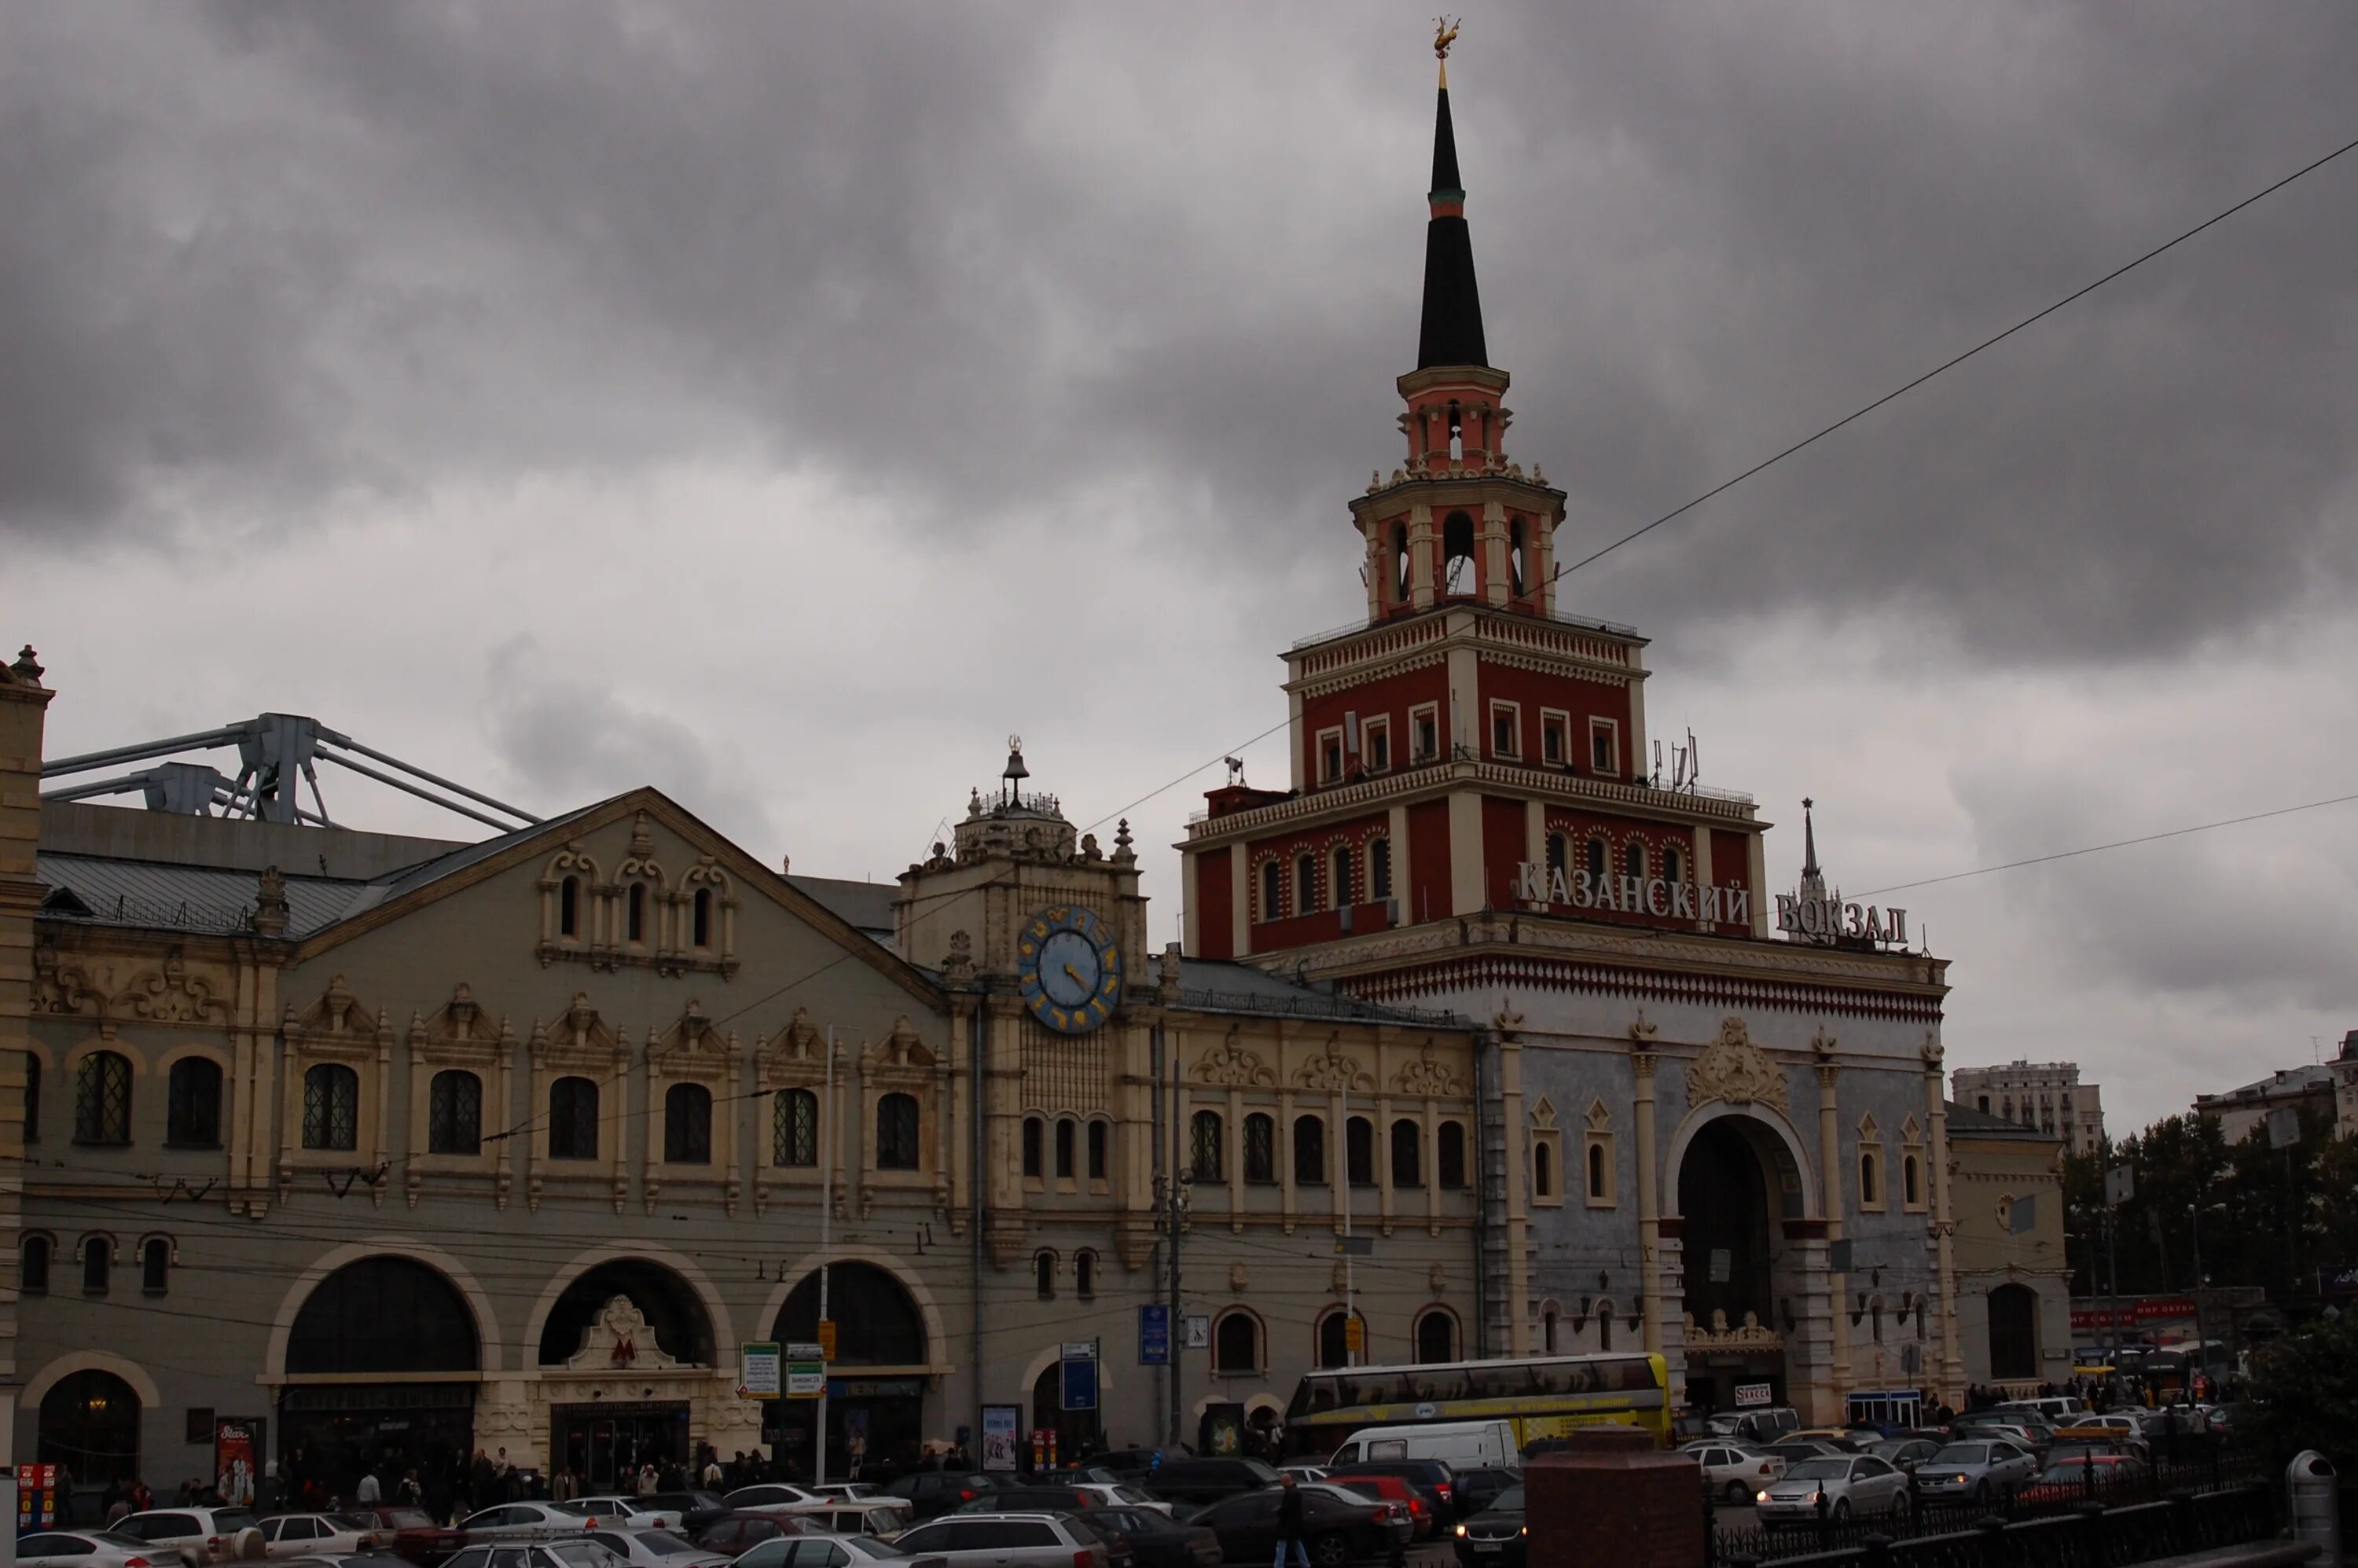 Октябрьская казанский вокзал